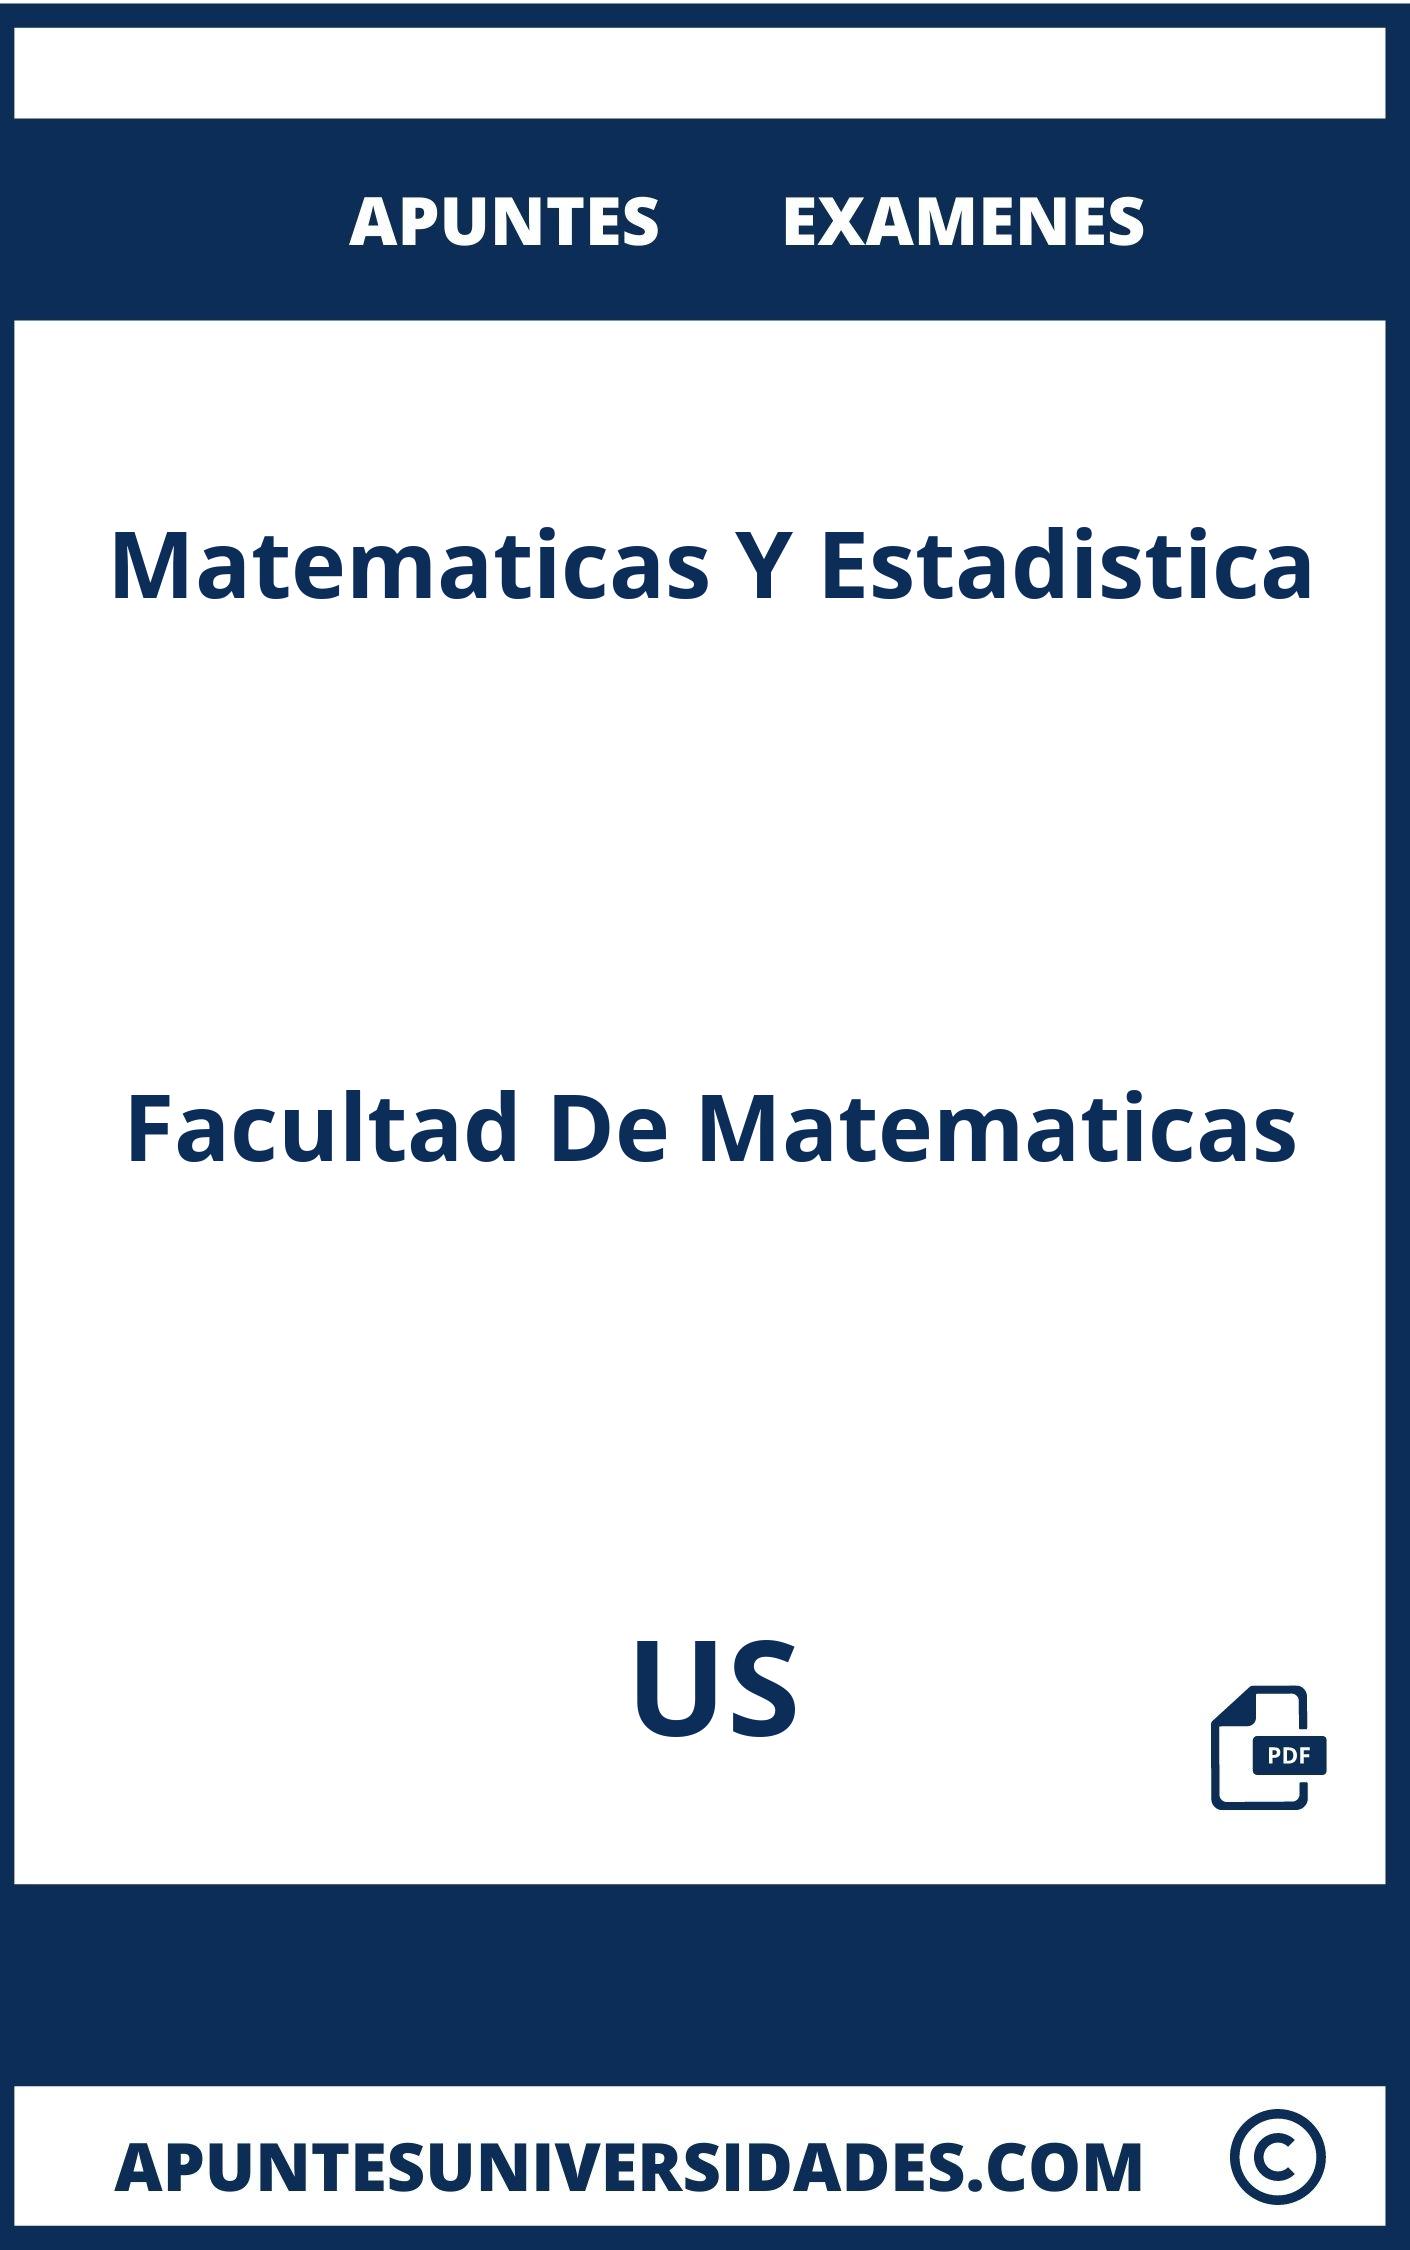 Matematicas Y Estadistica US Examenes Apuntes